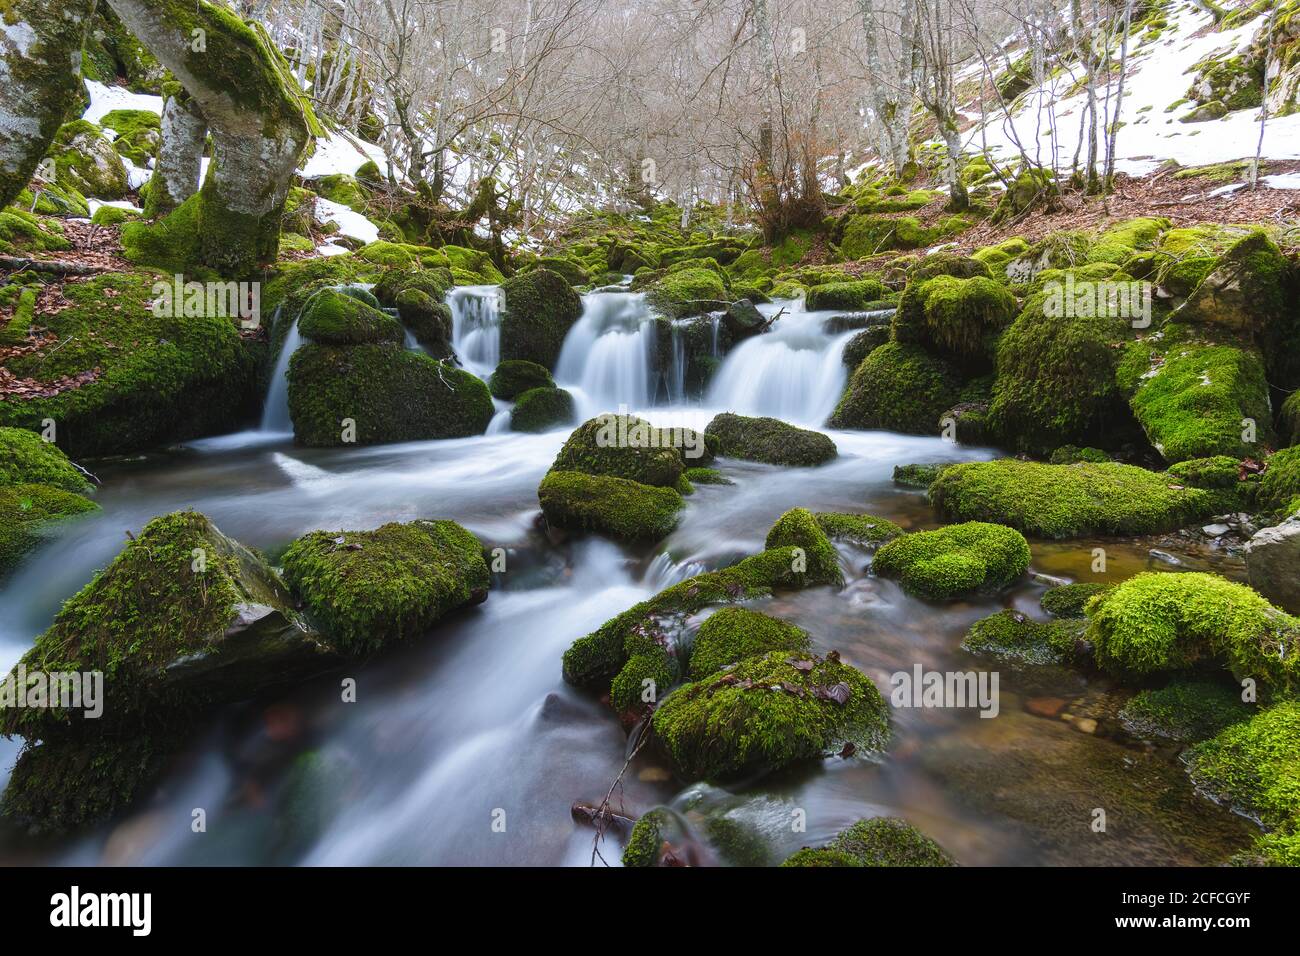 Stretto fiume di montagna che corre tra rocce in muschio verde nella foresta invernale a Leon, Spagna Foto Stock